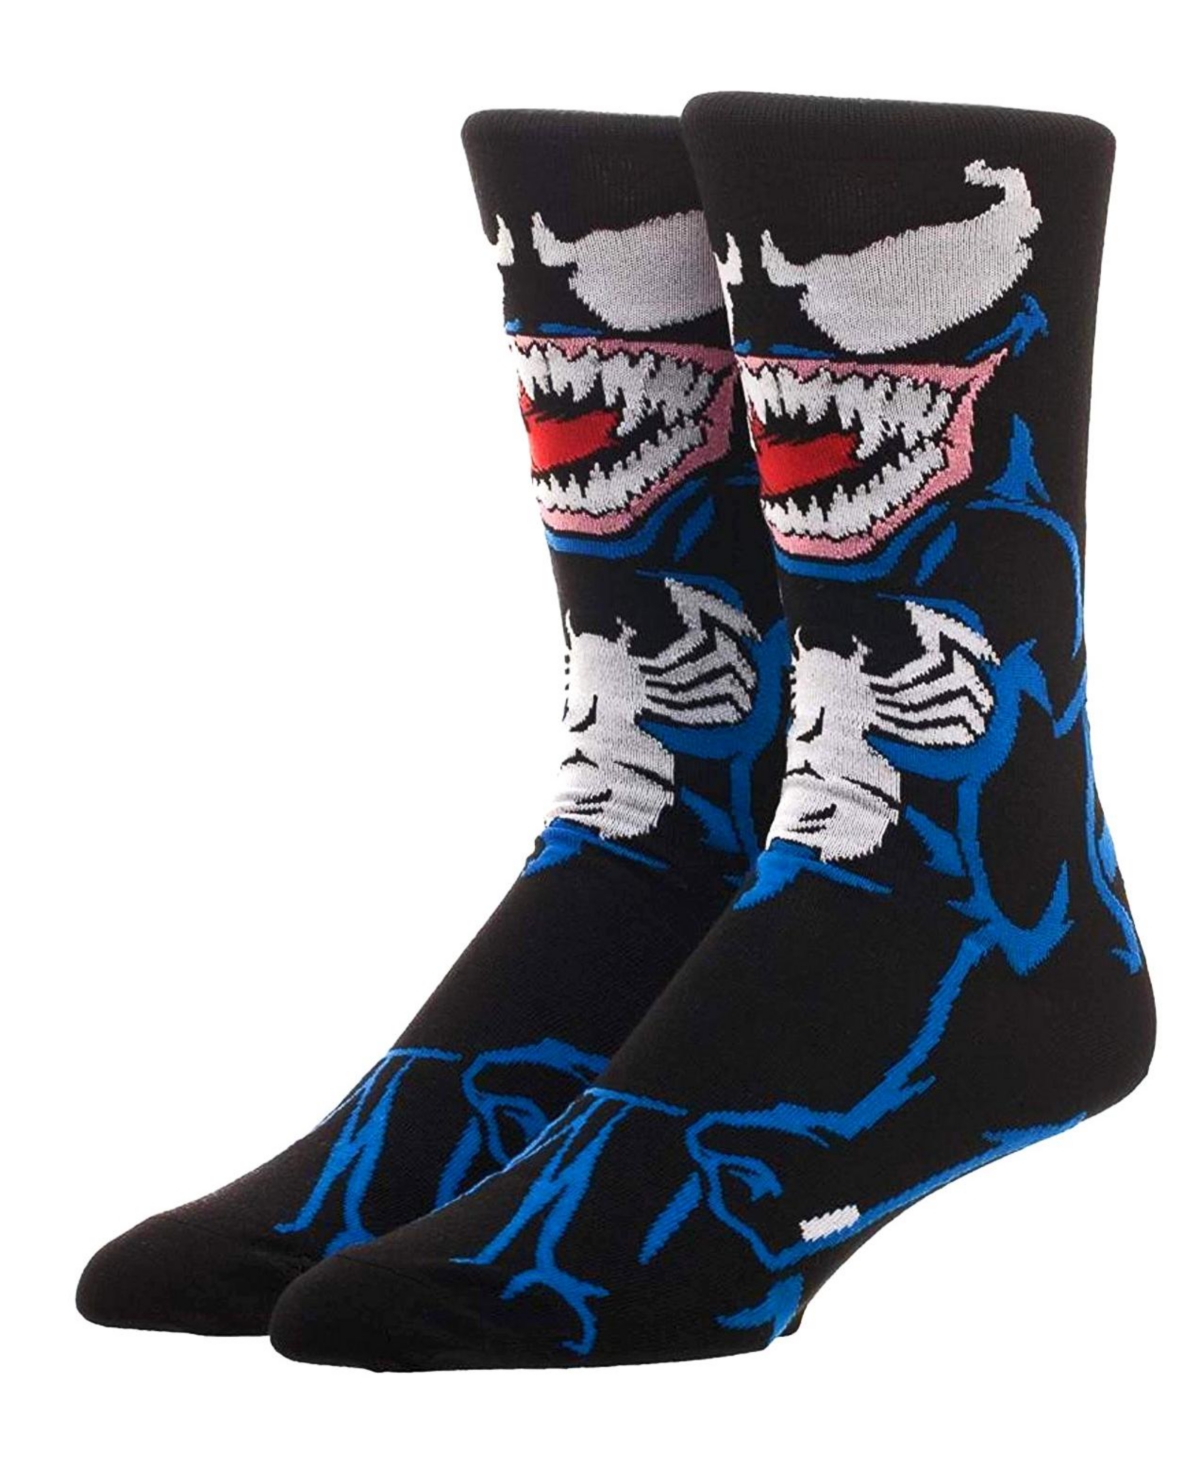 Venom Character Sublimated Unisex Adult Crew Socks - Black